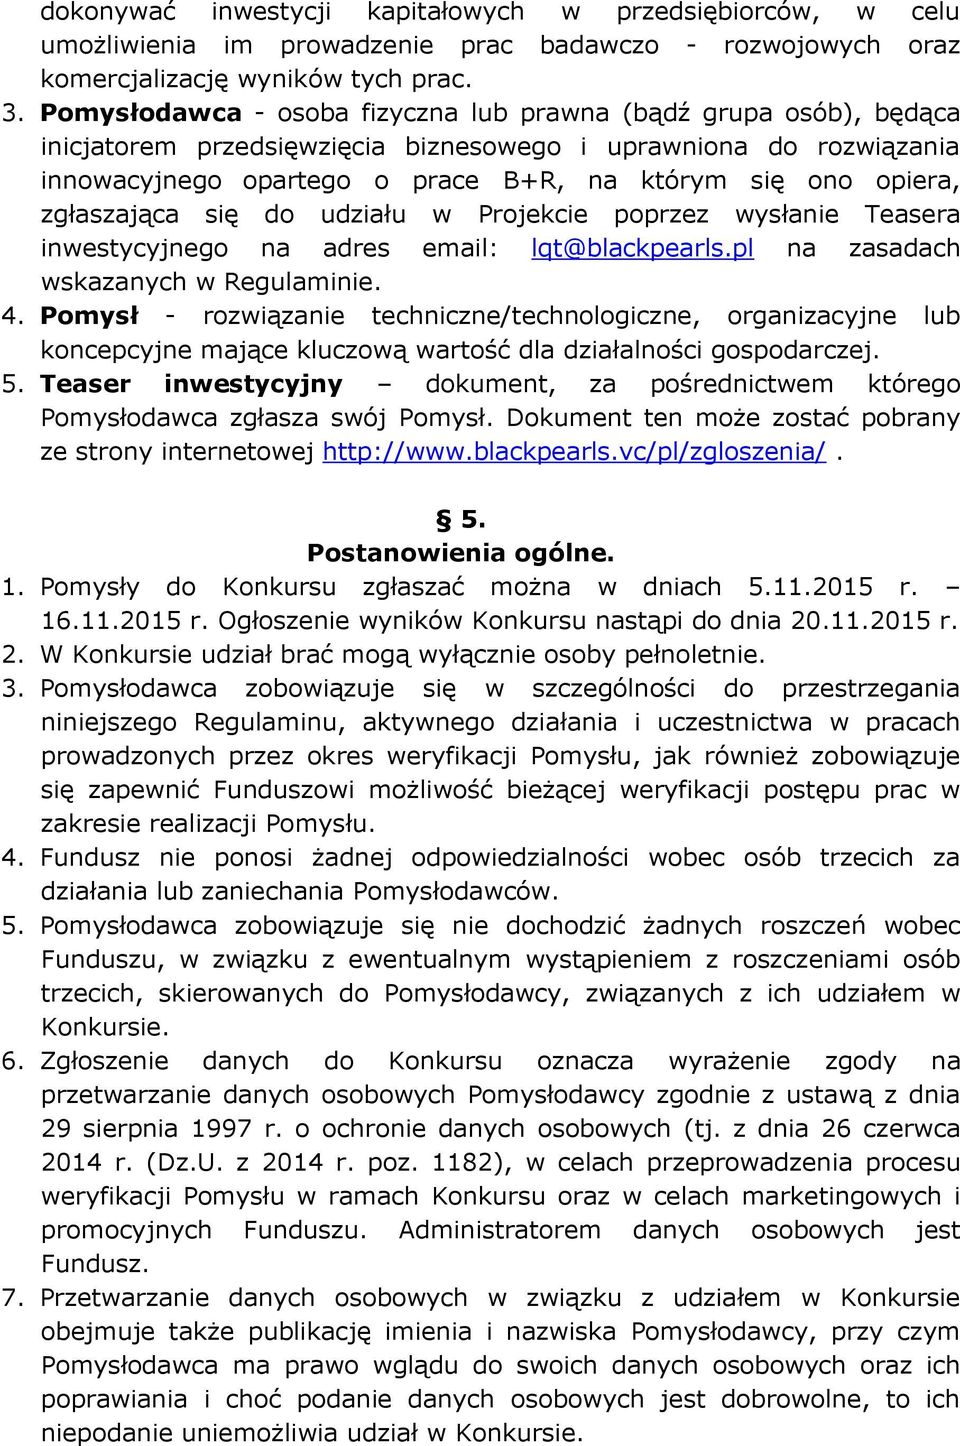 zgłaszająca się do udziału w Projekcie poprzez wysłanie Teasera inwestycyjnego na adres email: lqt@blackpearls.pl na zasadach wskazanych w Regulaminie. 4.